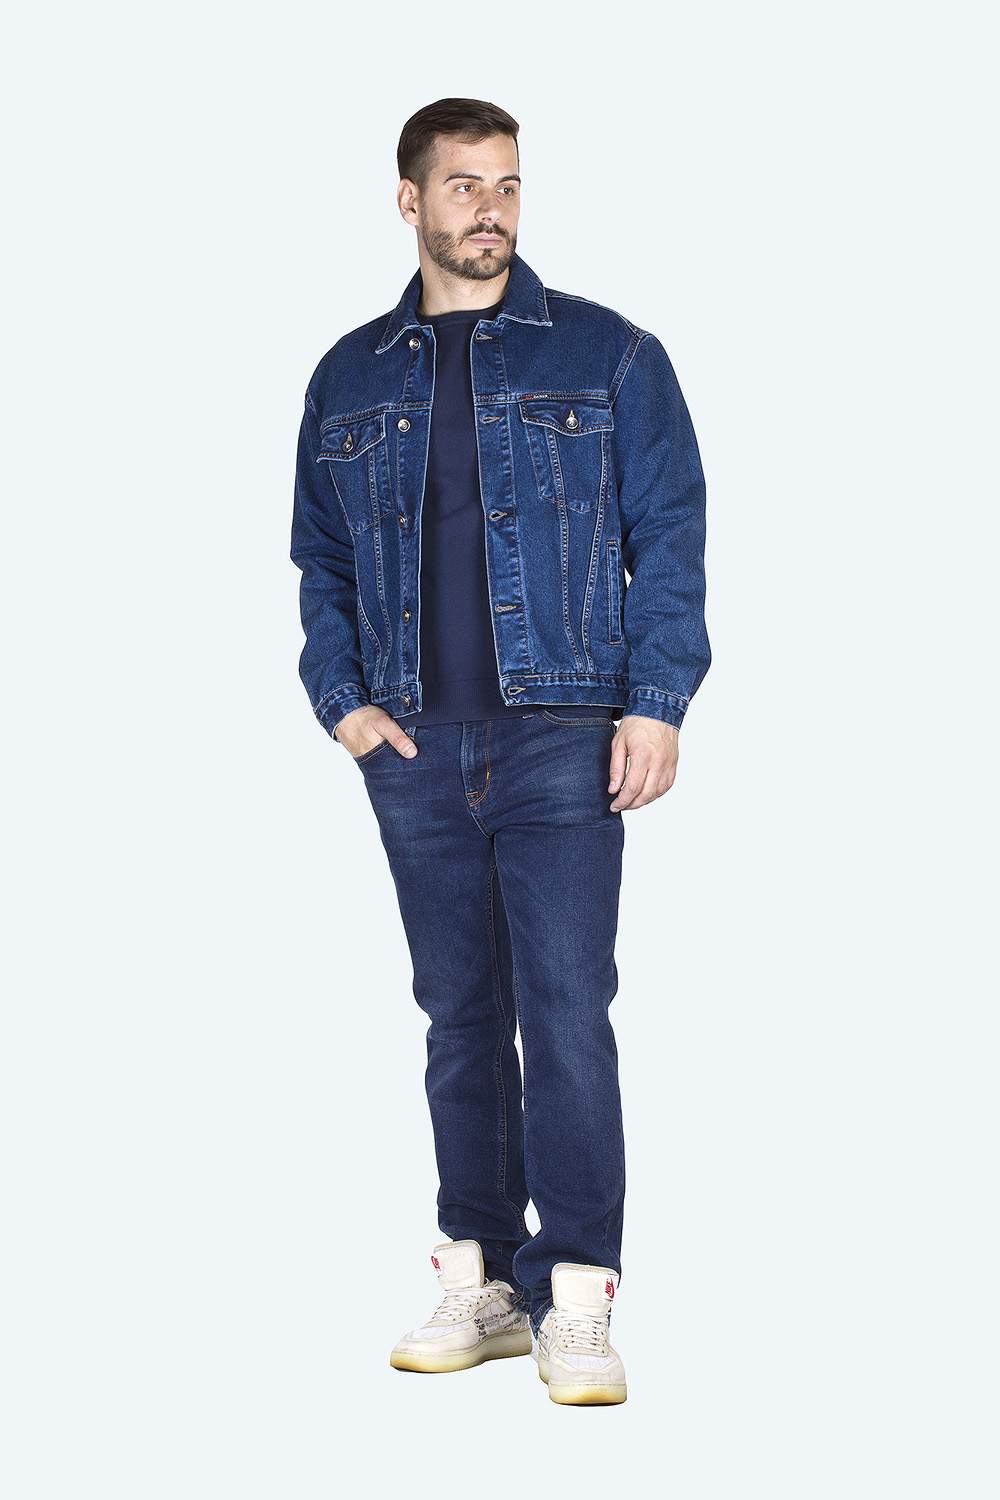 Джинсовая куртка мужская Dairos GD5060502 синяя XL